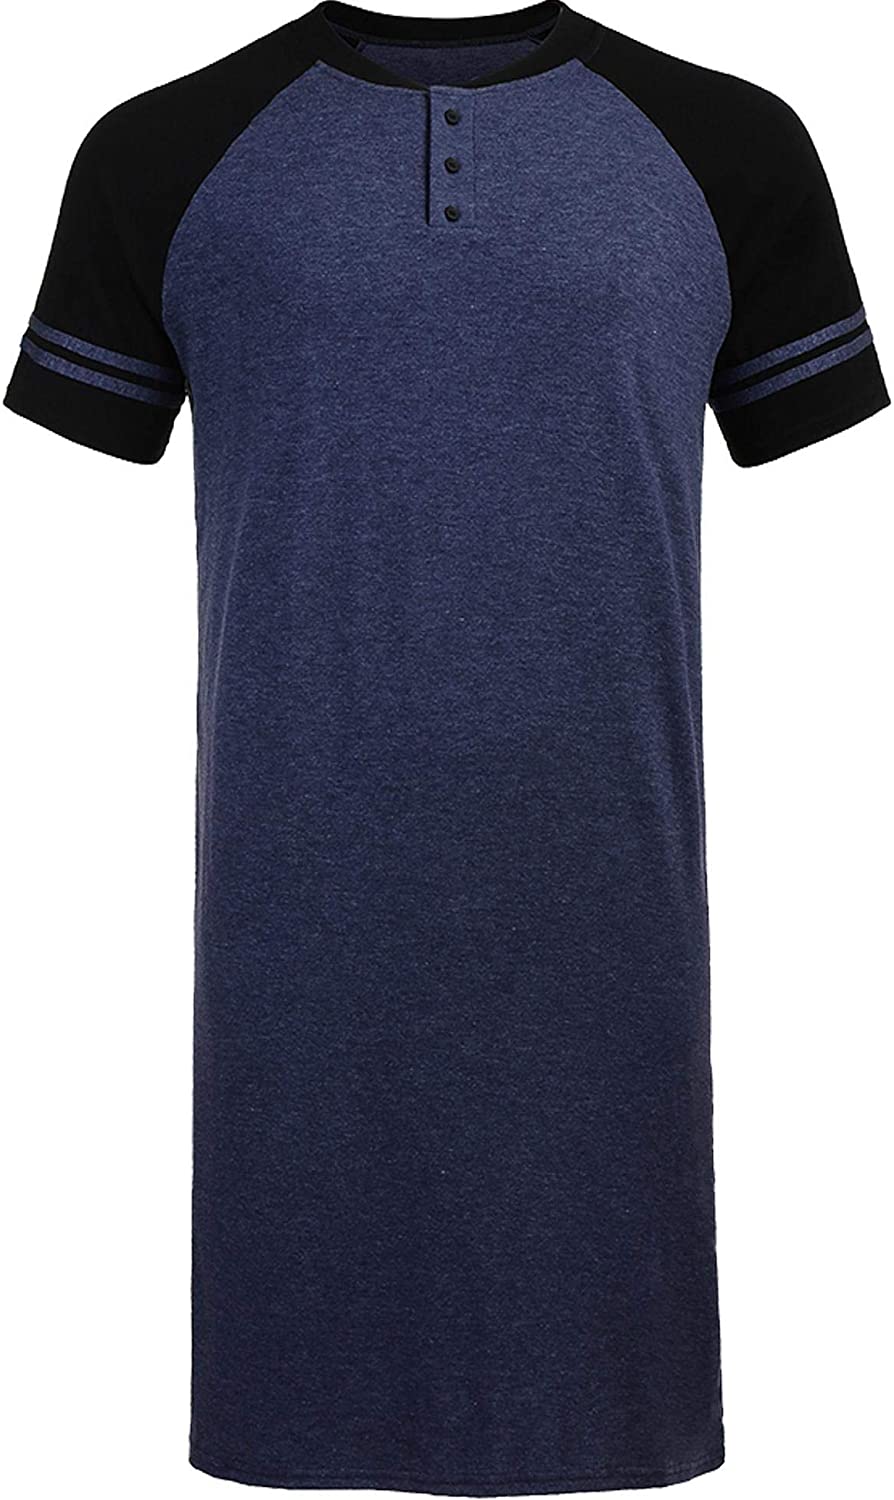 Men's Sleepshirt Short Sleeve Long Nightshirt Comfy Big&Tall Nightgown Sleepwear